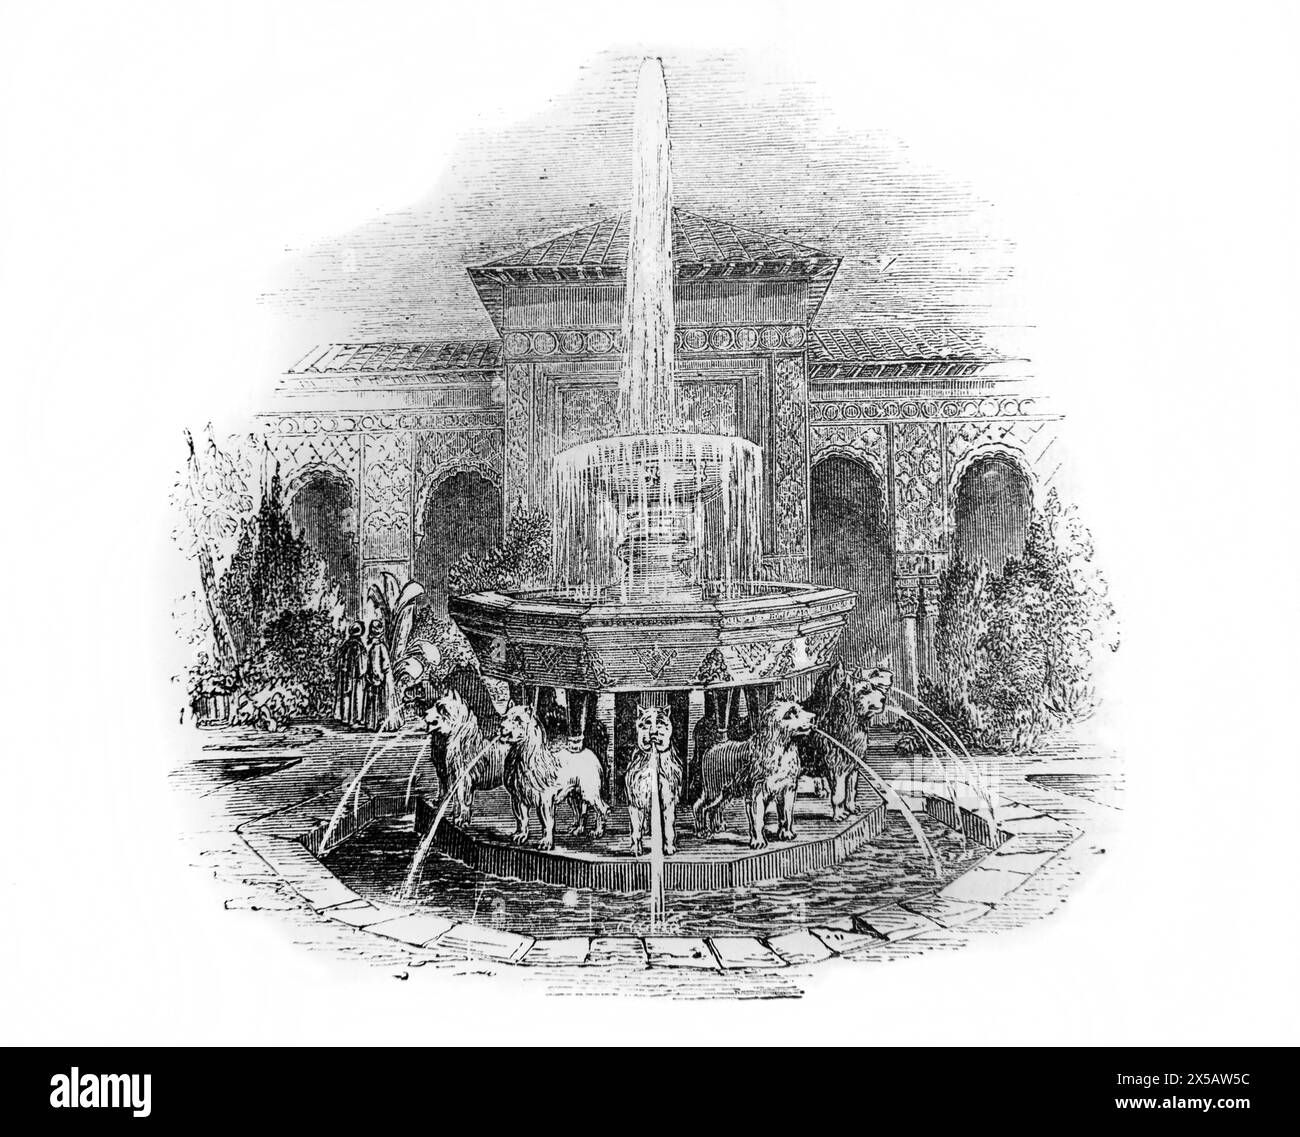 Incisione in legno della Fontana dei Leoni ad Alhambra in Spagna nel XIX secolo nella Bibbia di famiglia illustrata Foto Stock